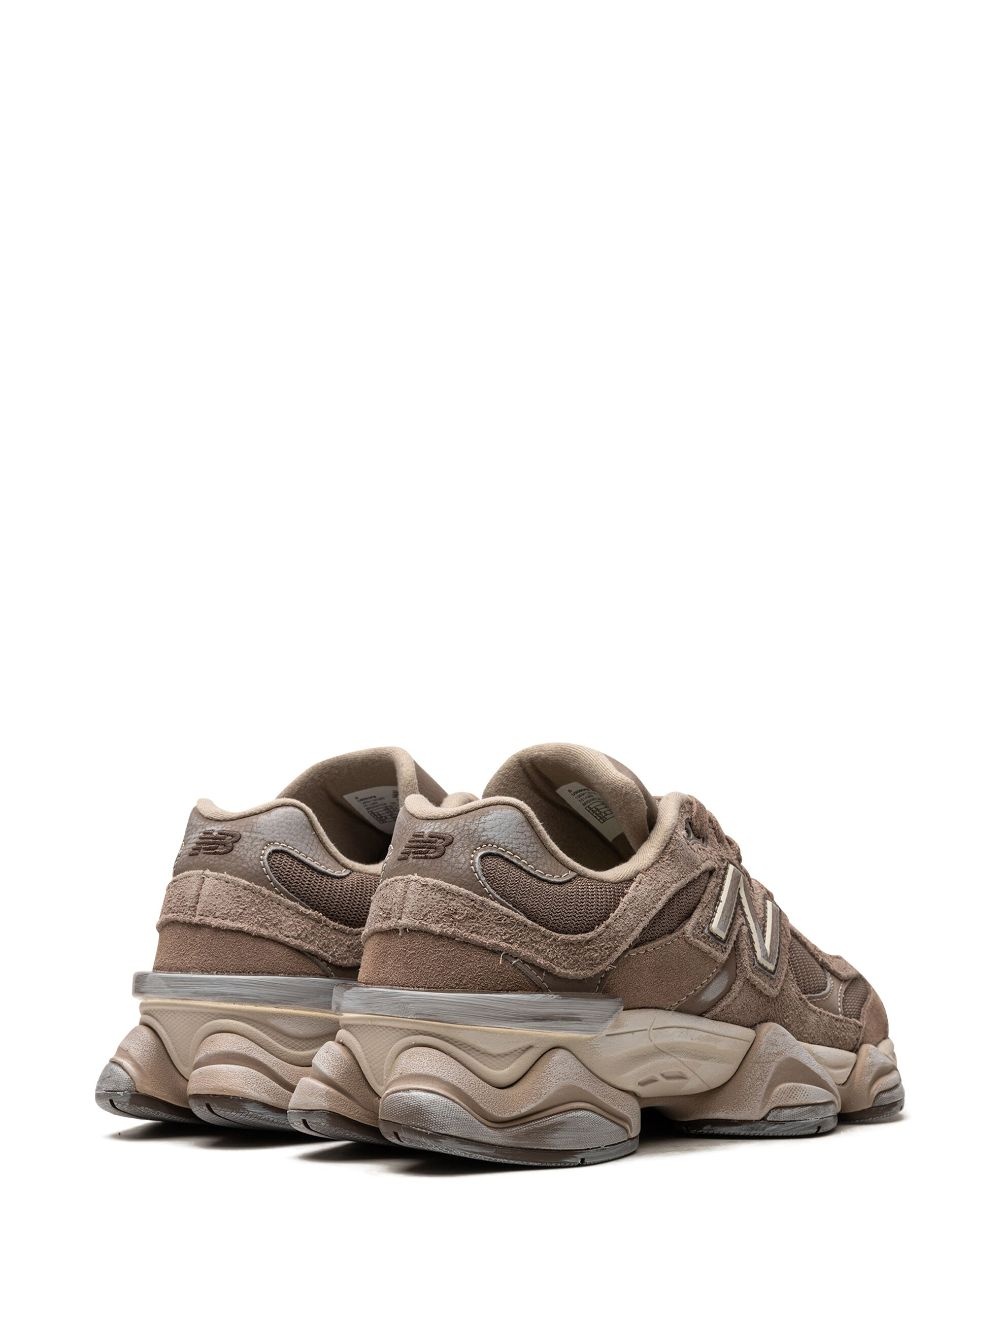 9060 "Mushroom Brown" sneakers - 3